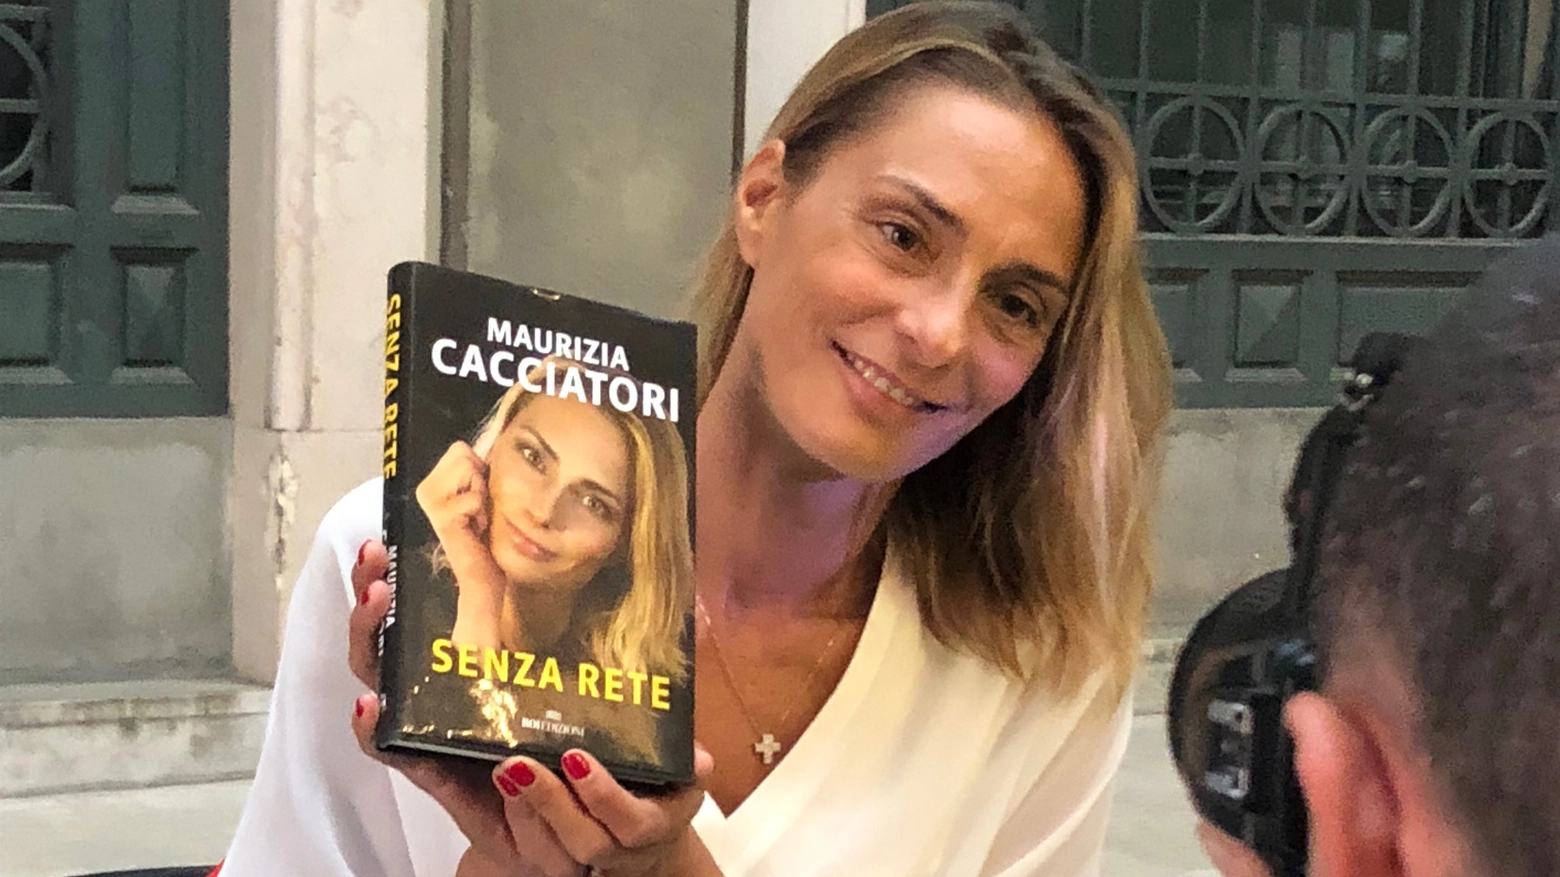 Maurizia Cacciatori con il suo libro (Foto Novi)